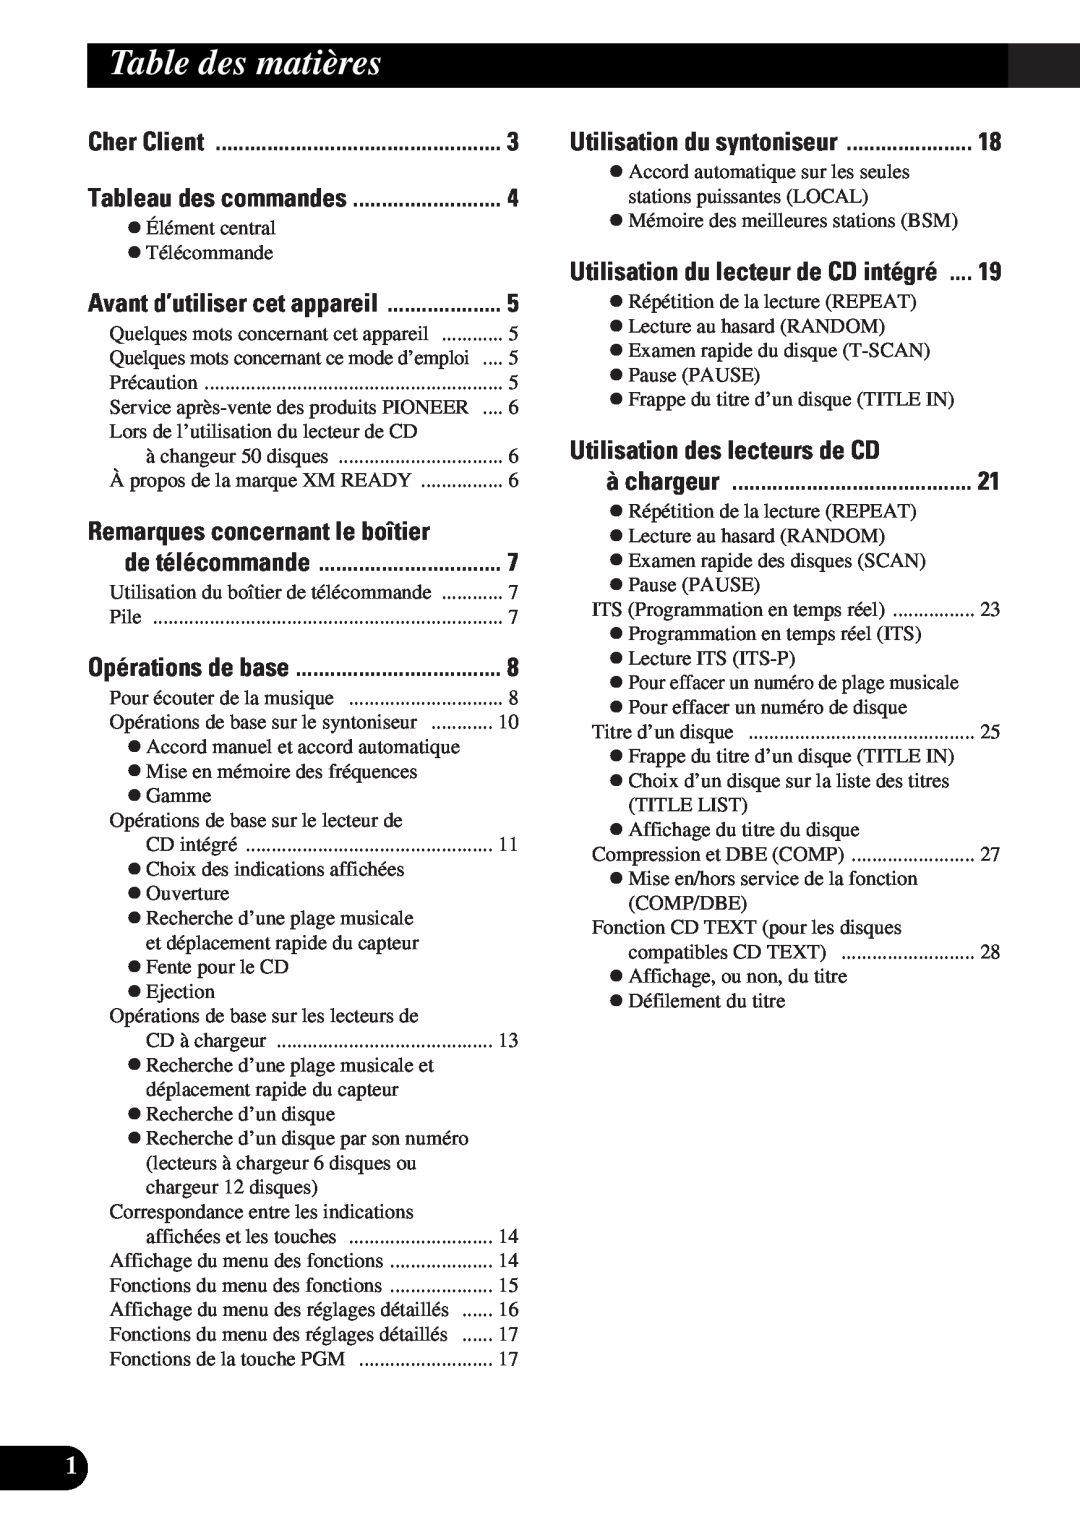 Pioneer DEH-P43 Table des matières, Utilisation des lecteurs de CD, Cher Client, Remarques concernant le boîtier 